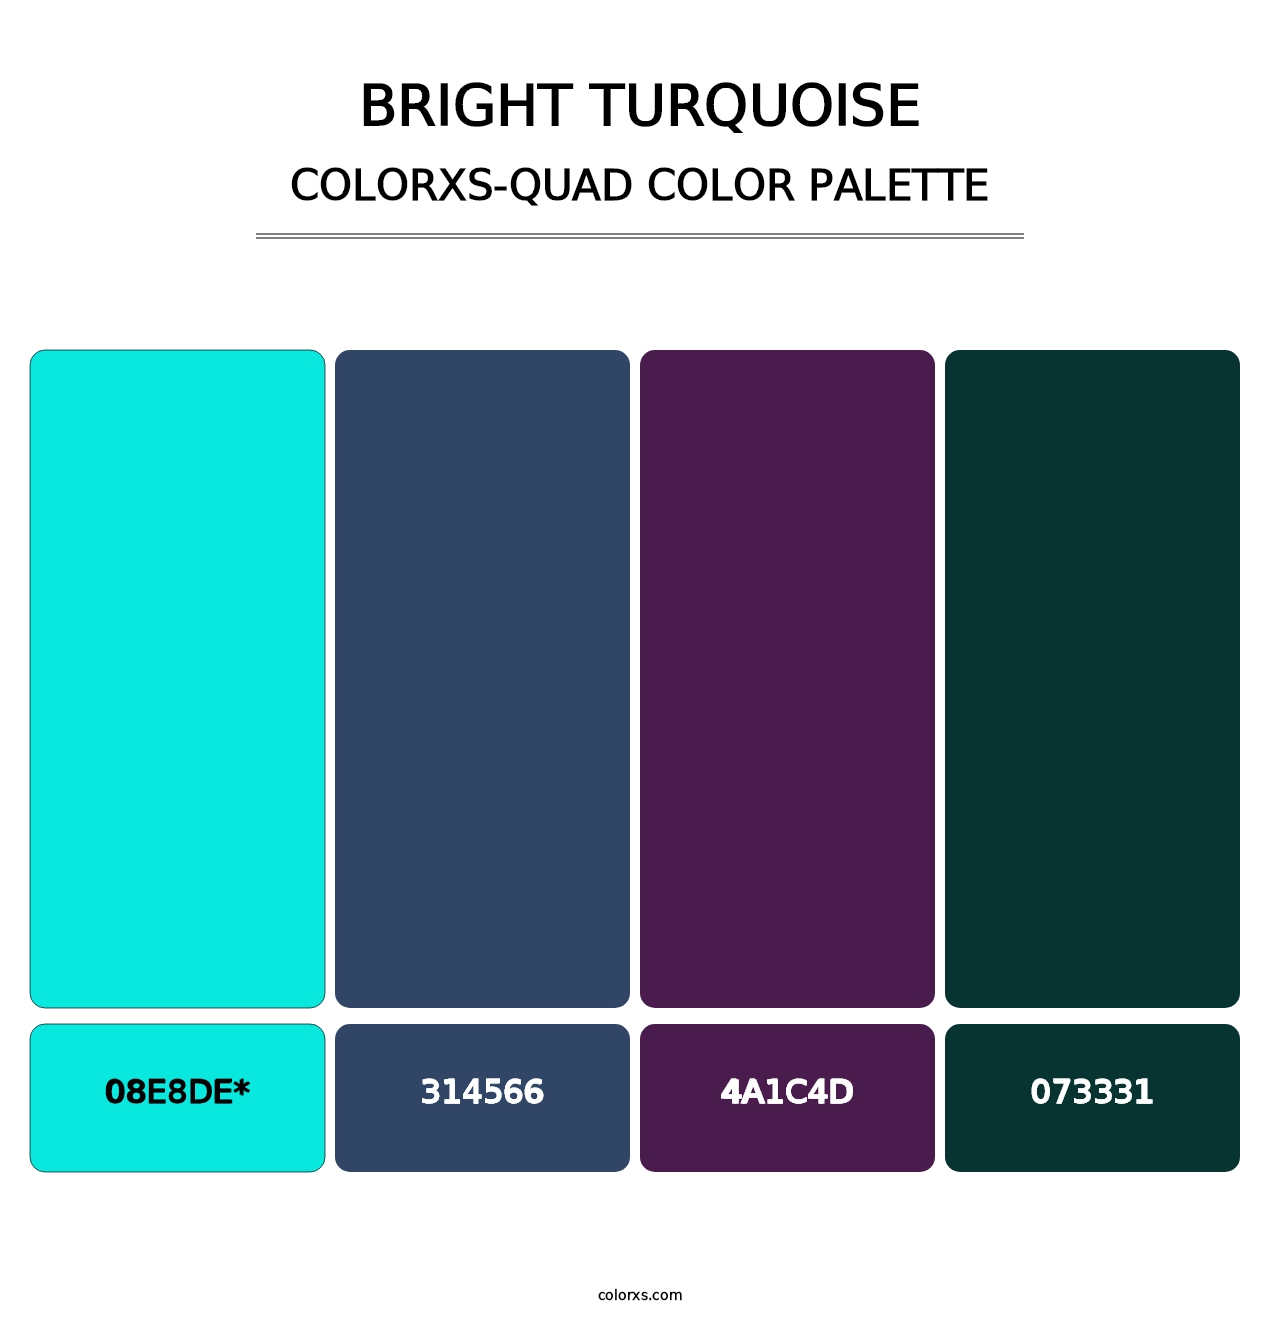 Bright Turquoise - Colorxs Quad Palette